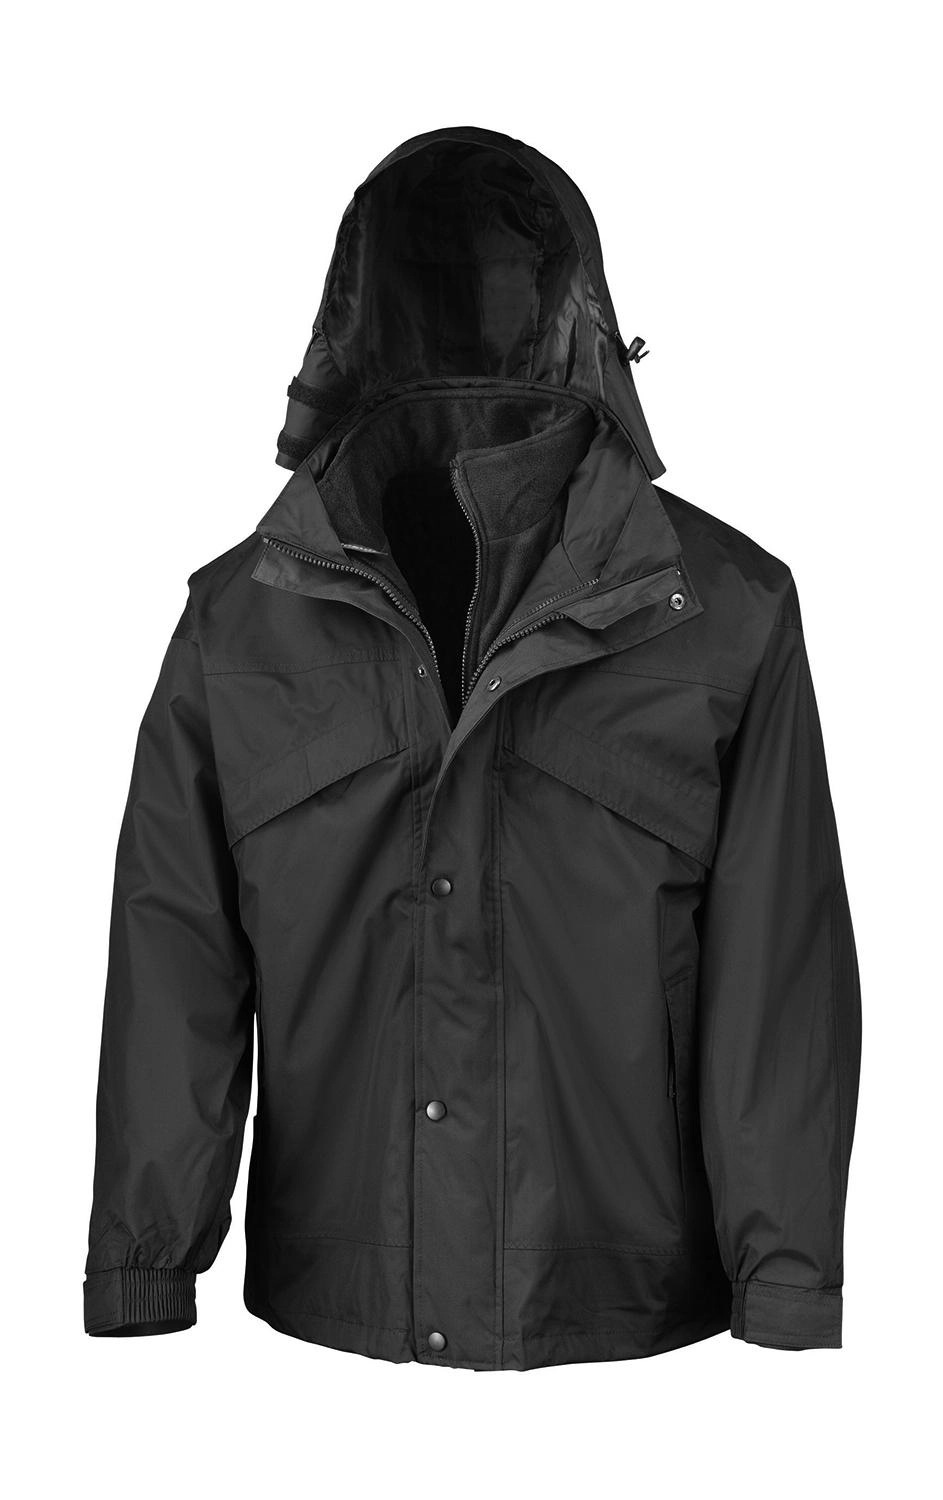 3-in-1 Jacket with Fleece zum Besticken und Bedrucken in der Farbe Black mit Ihren Logo, Schriftzug oder Motiv.